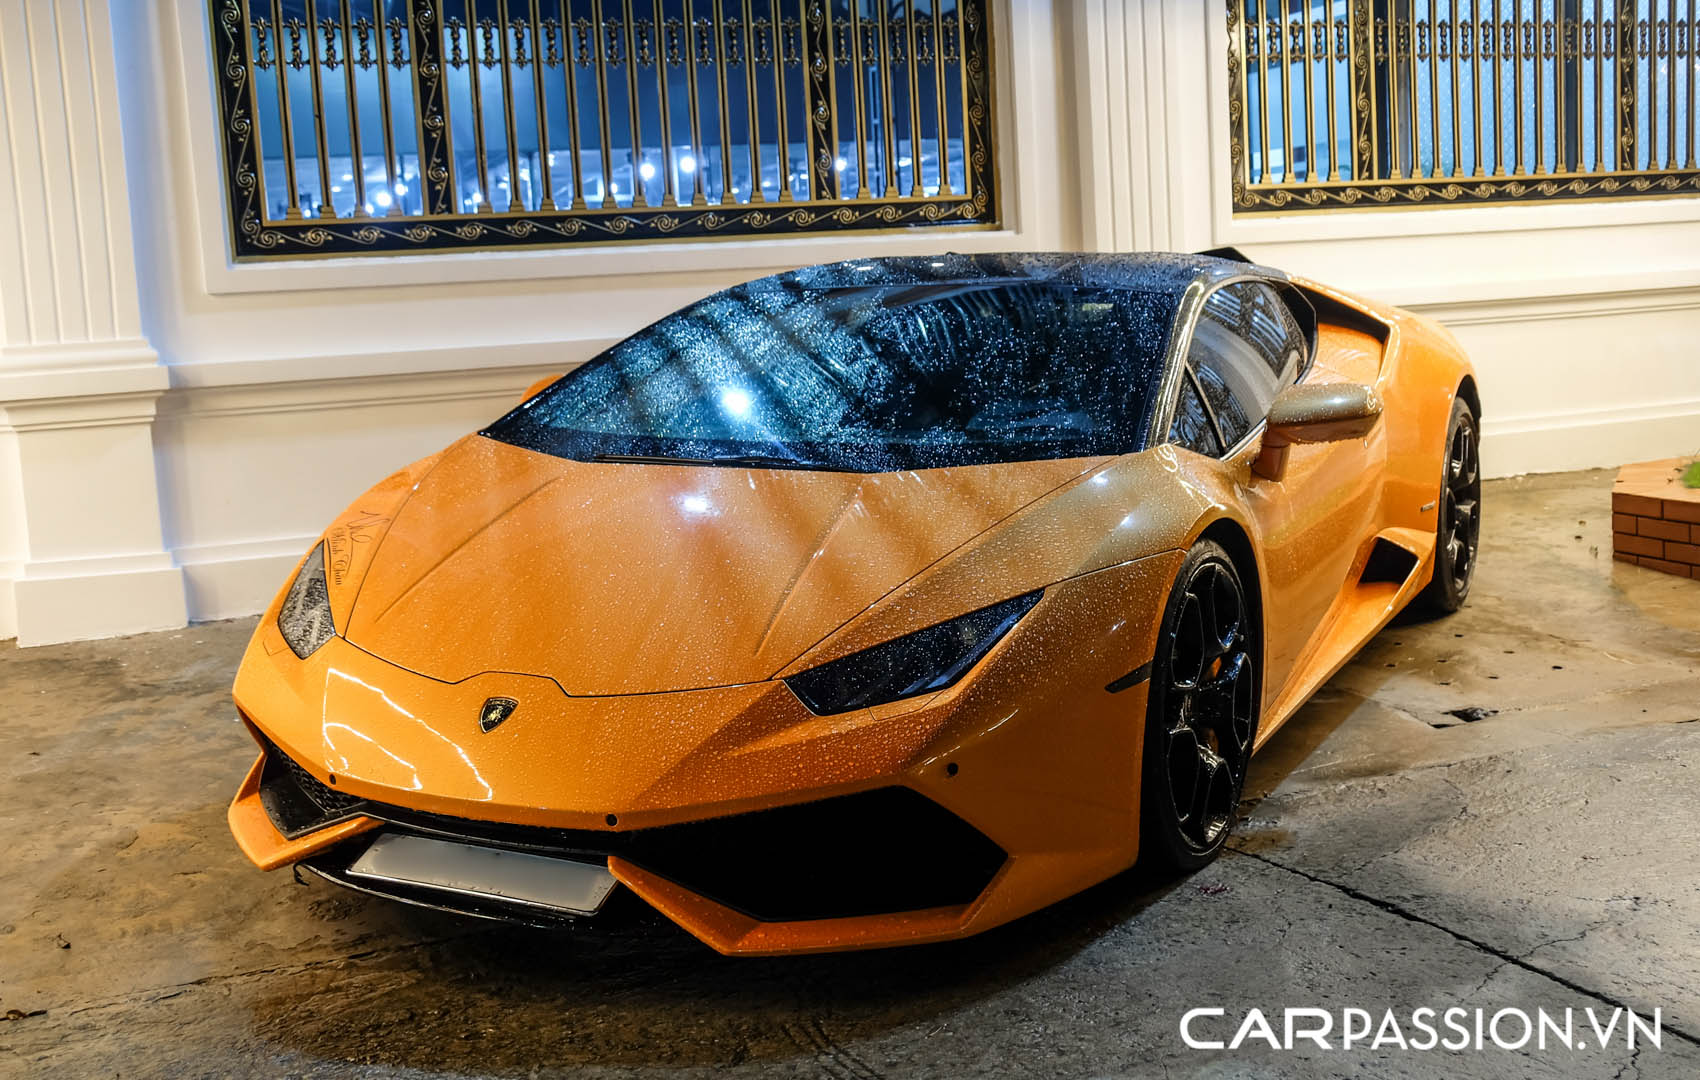 CP-Bộ đôi Lamborghini Huracan độ độc đáo14.jpg